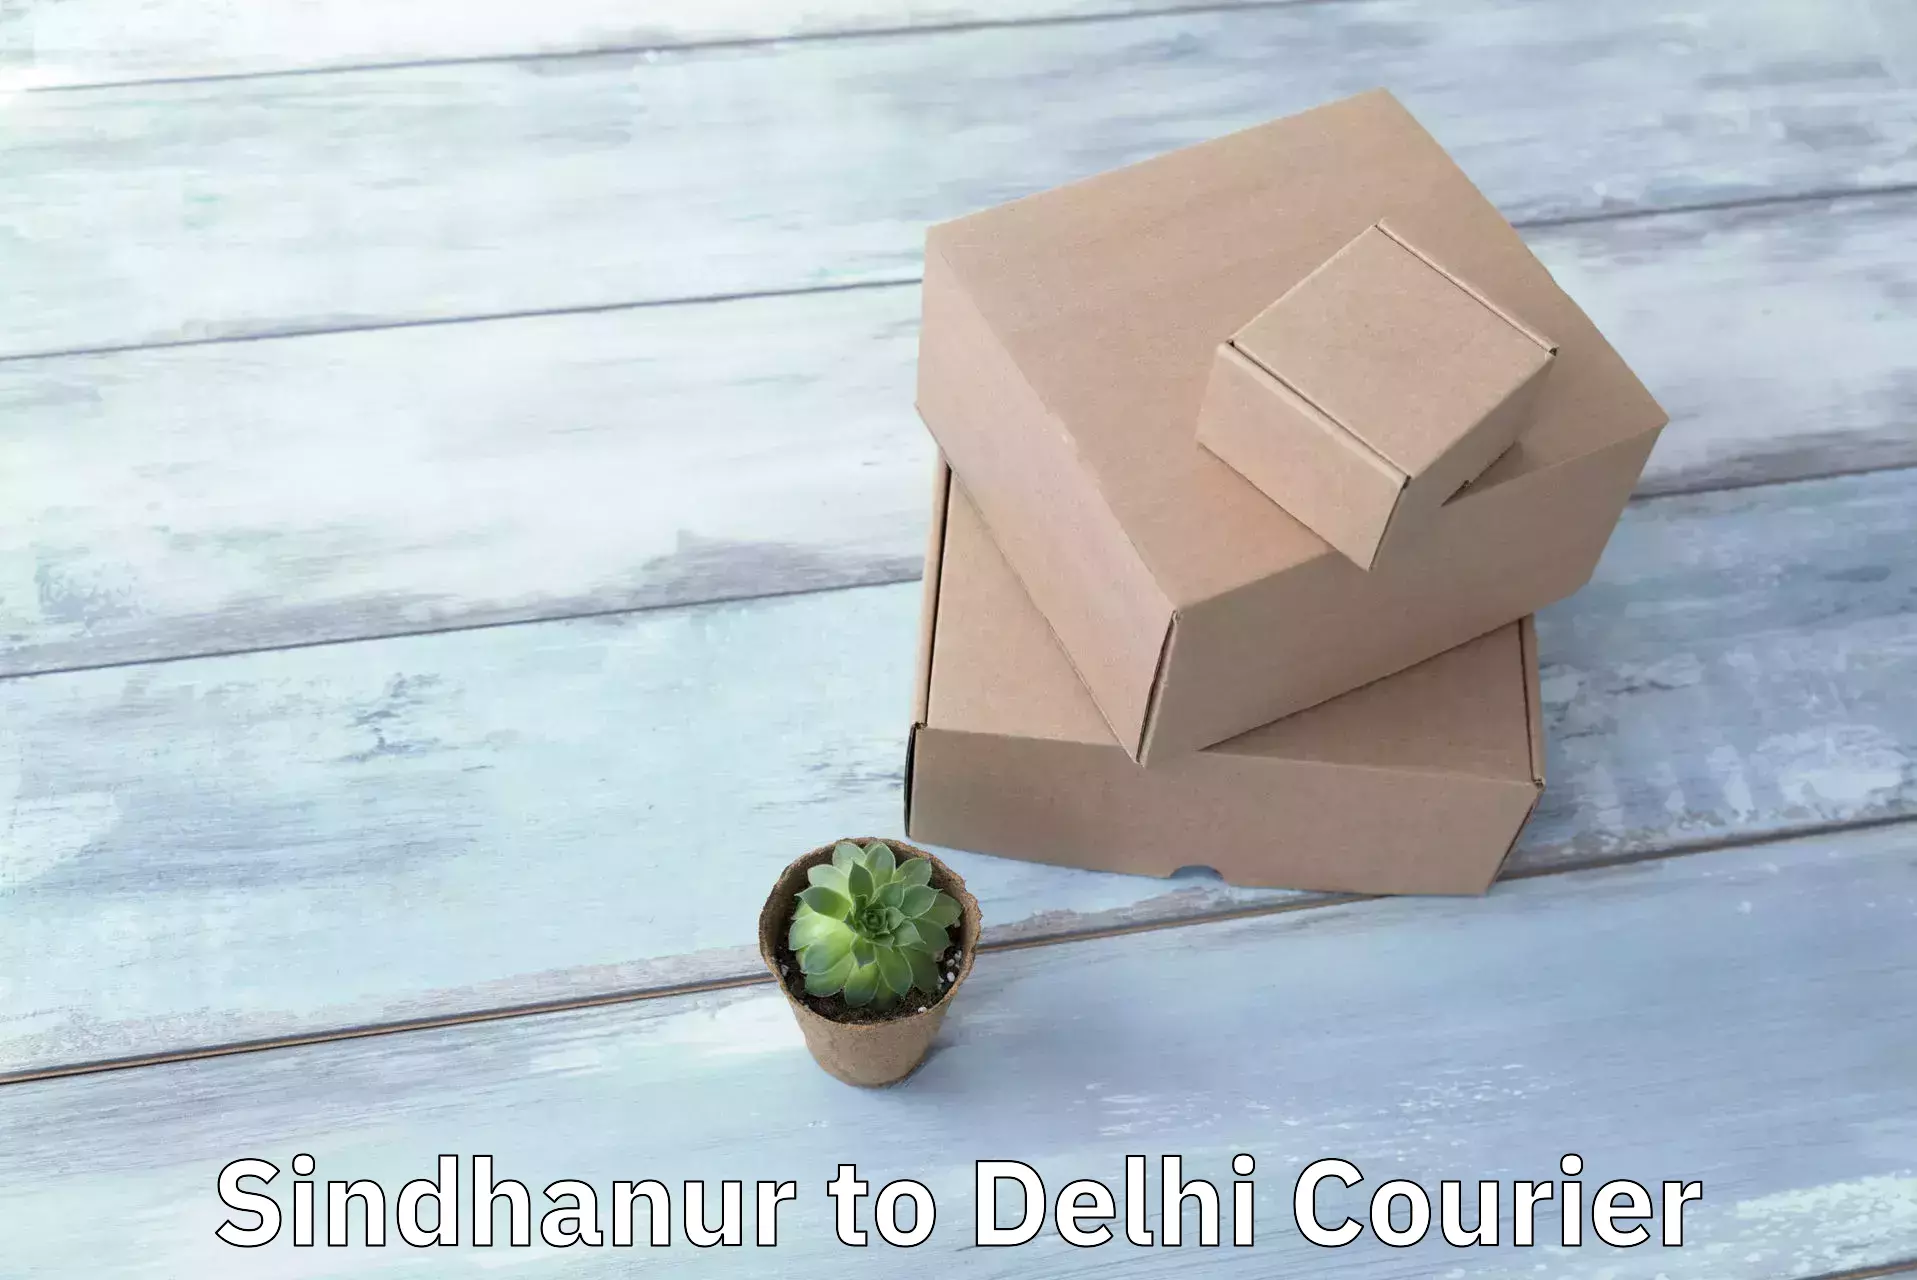 Efficient cargo handling in Sindhanur to University of Delhi